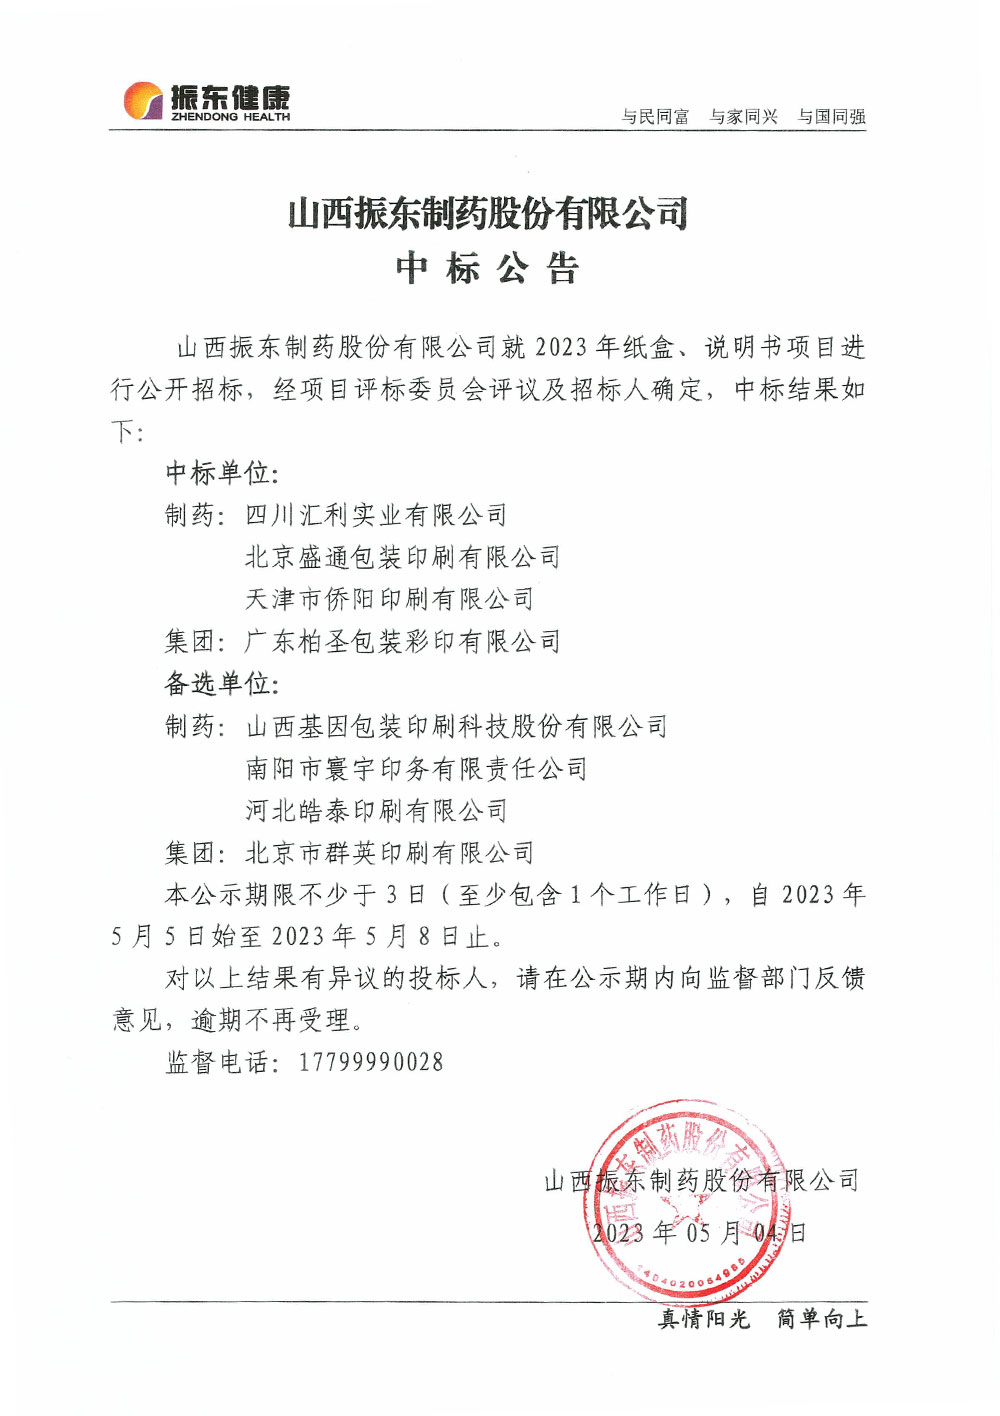 山西ag九游官网
制药股分无限公司中标告诉布告